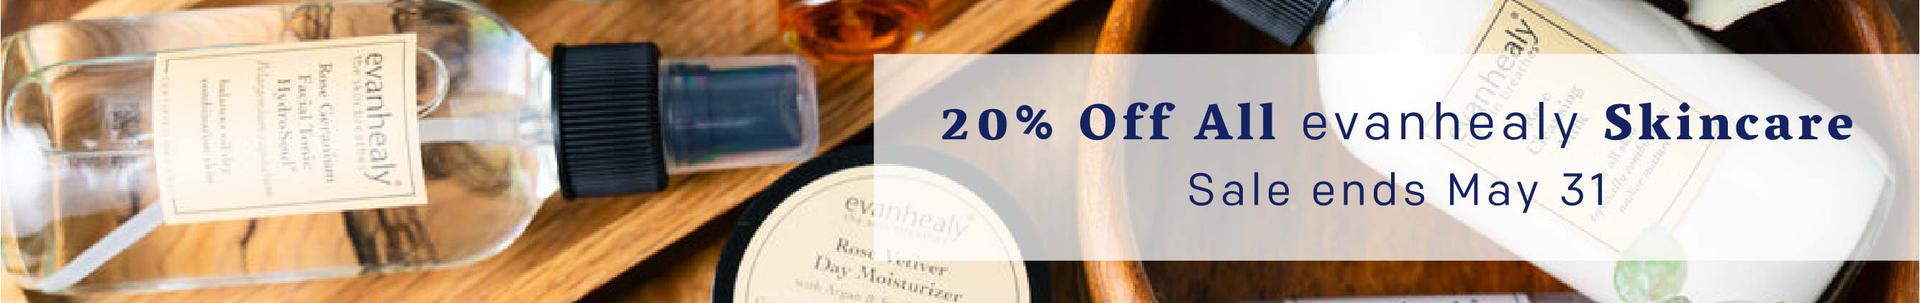 20% Off All evanhealy Skincare